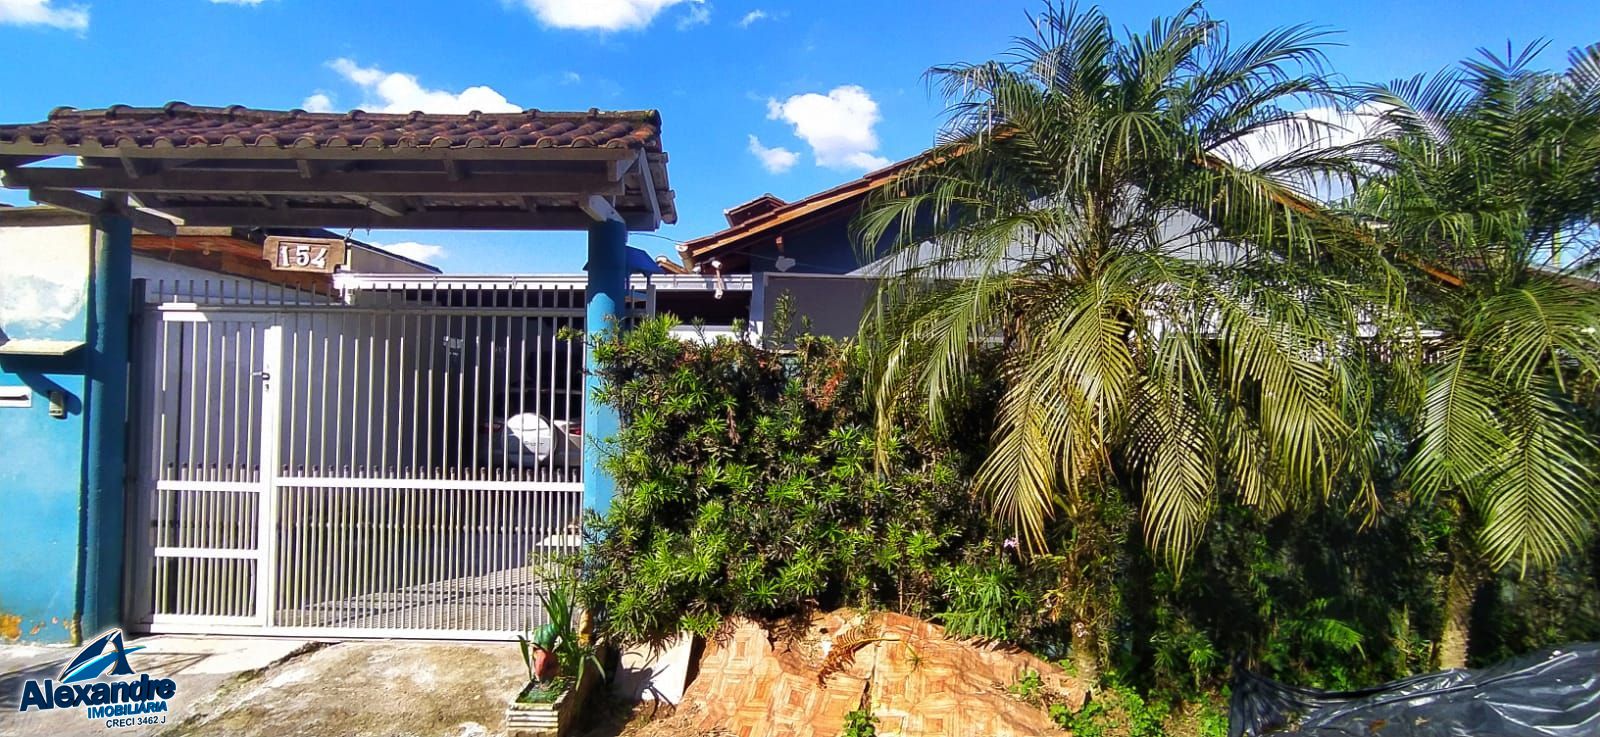 Casa  venda  no Jaragu 99 - Jaragu do Sul, SC. Imveis